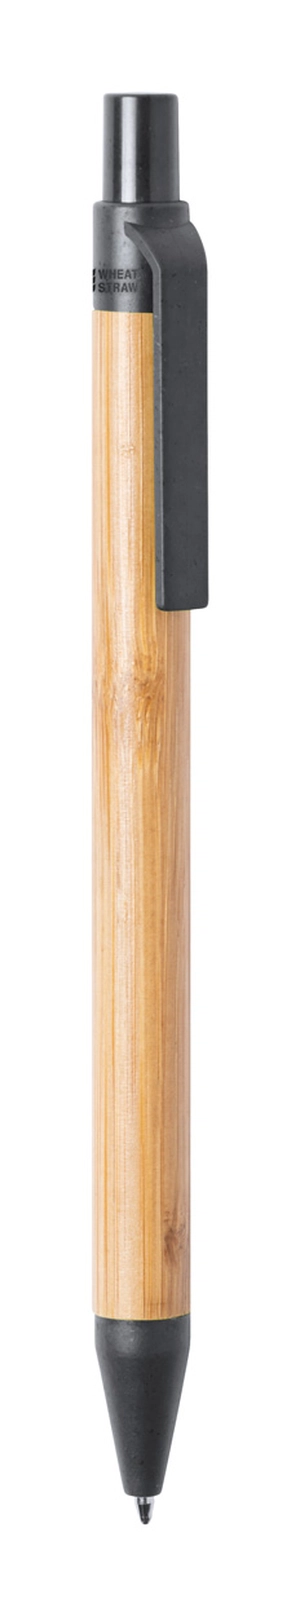 Stylo bille bambou avec attributs en paille de blé personnalisable